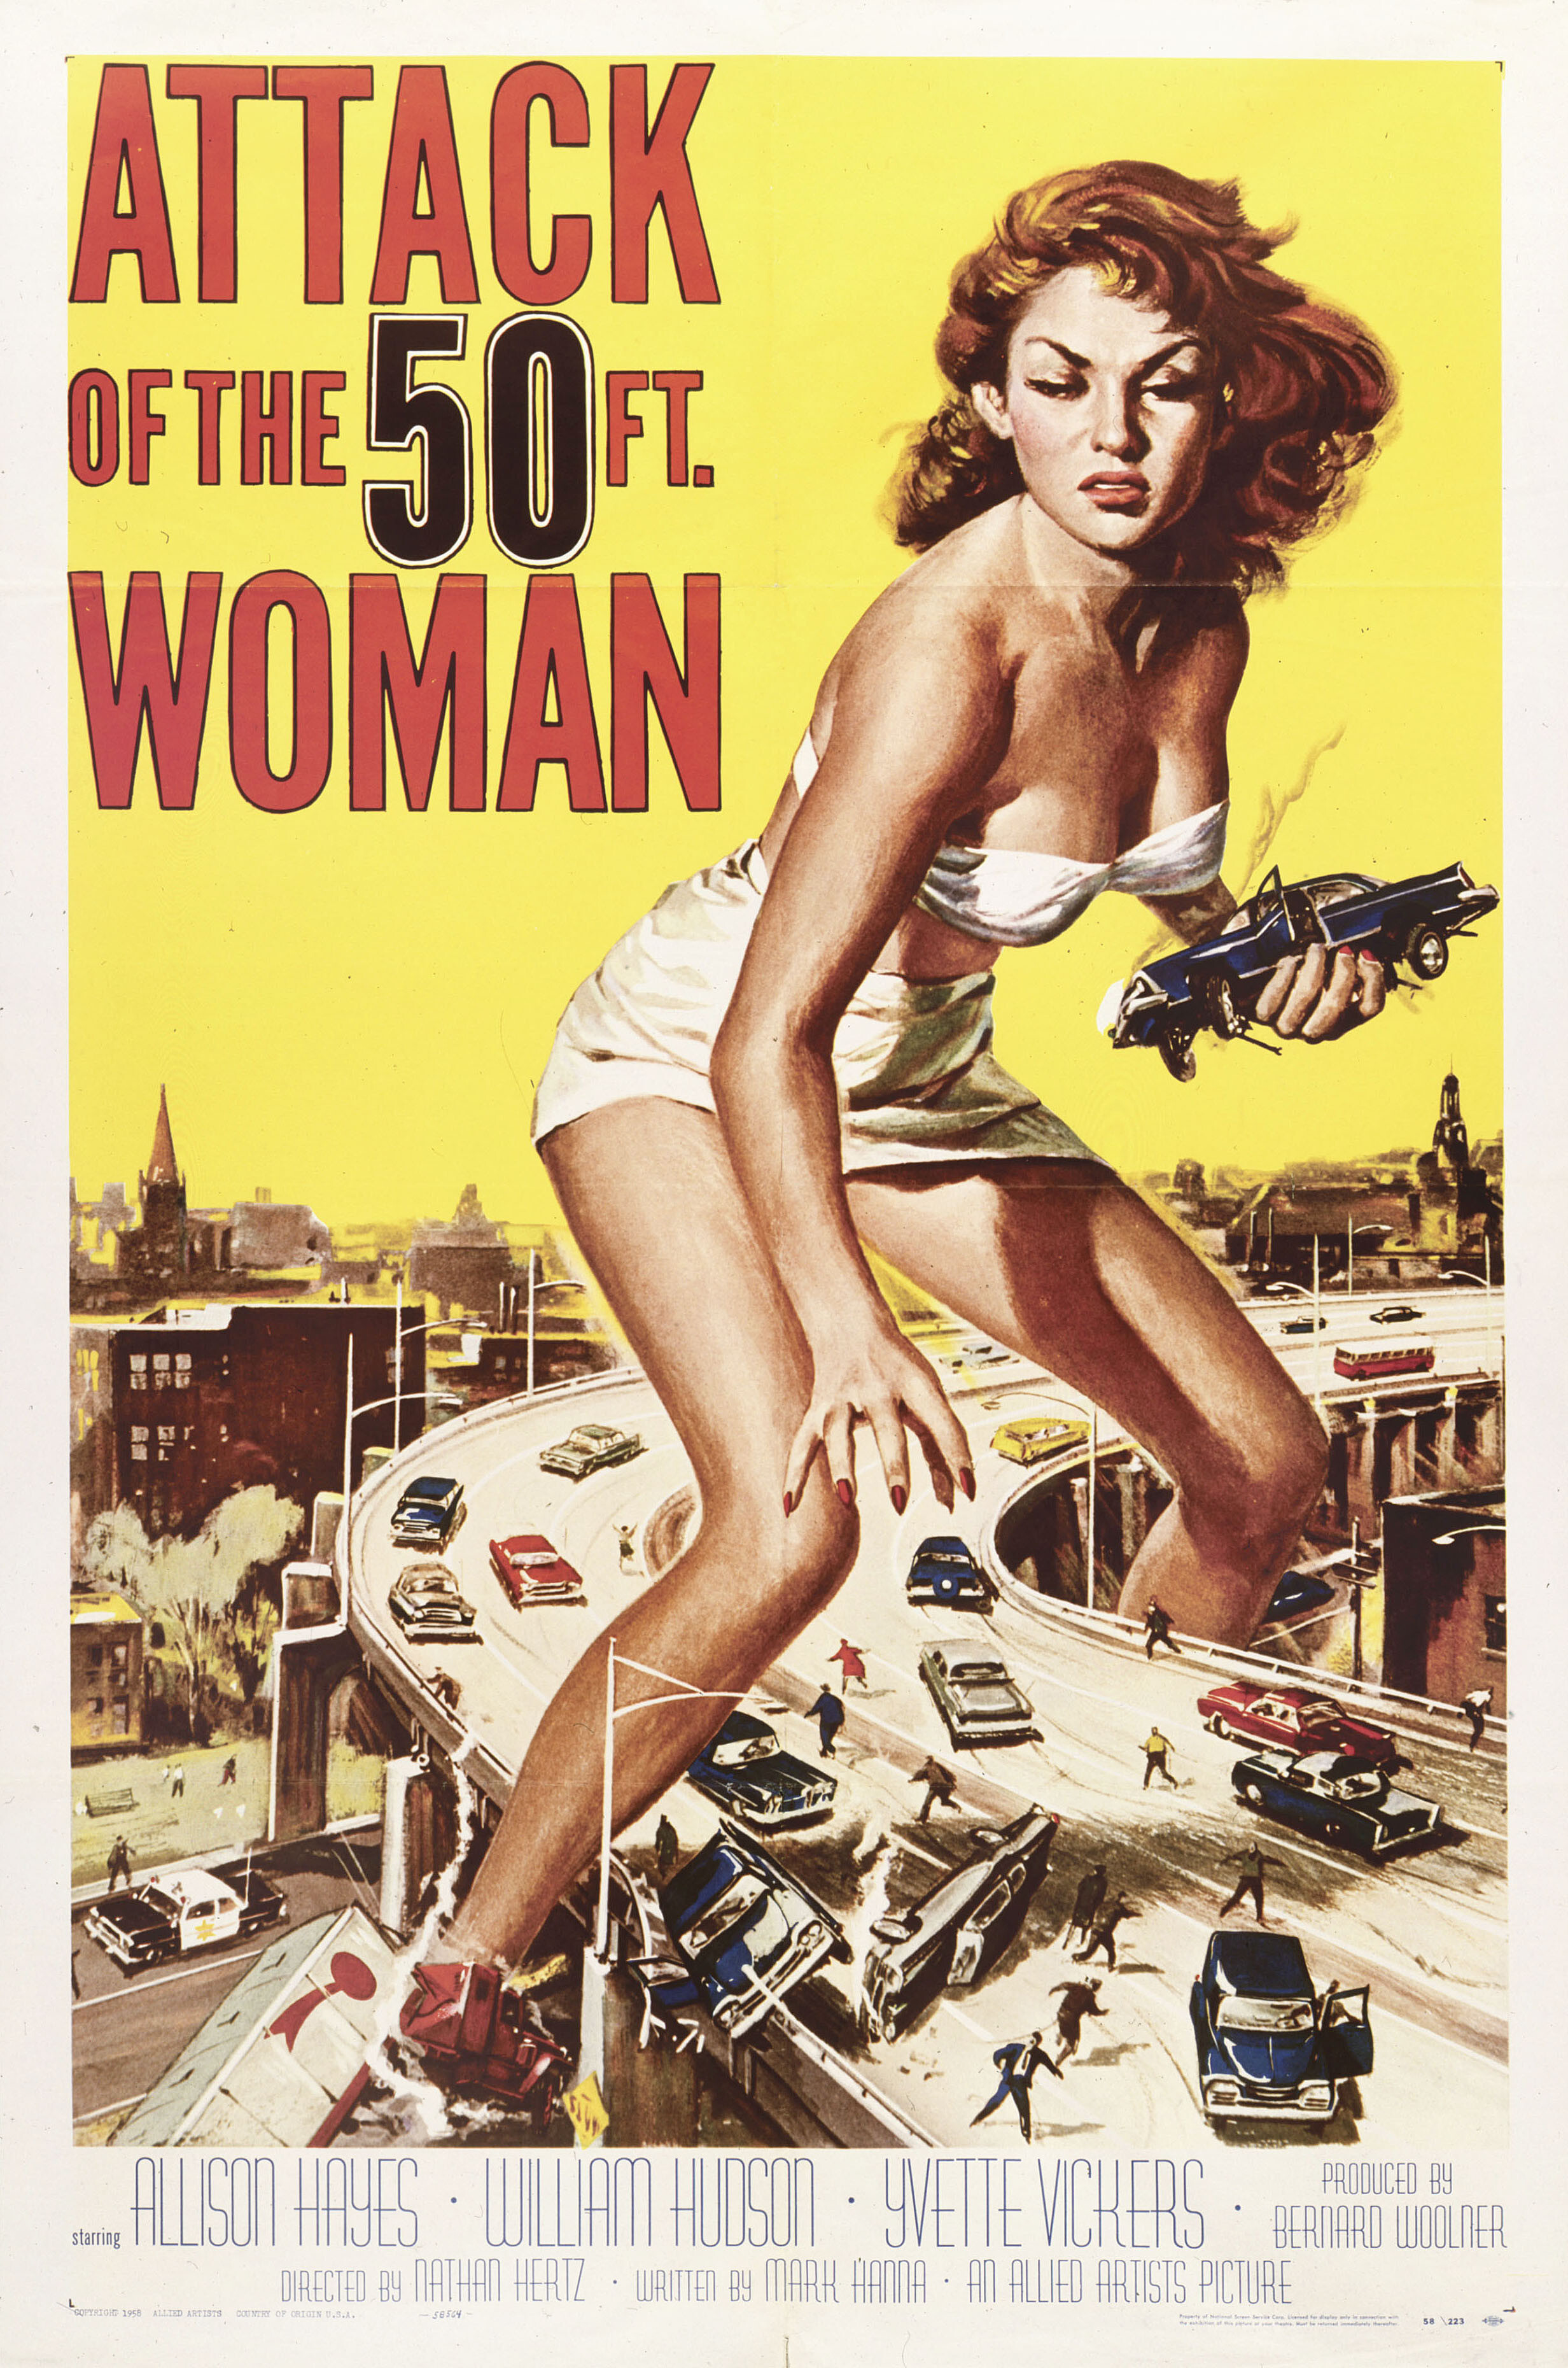 Атака 50-футовой женщины (Attack of the 50 Foot Woman, 1958), режиссёр Натан Джуран, художественный постер к фильму (США, 1958 год), автор Рейнольд Браун